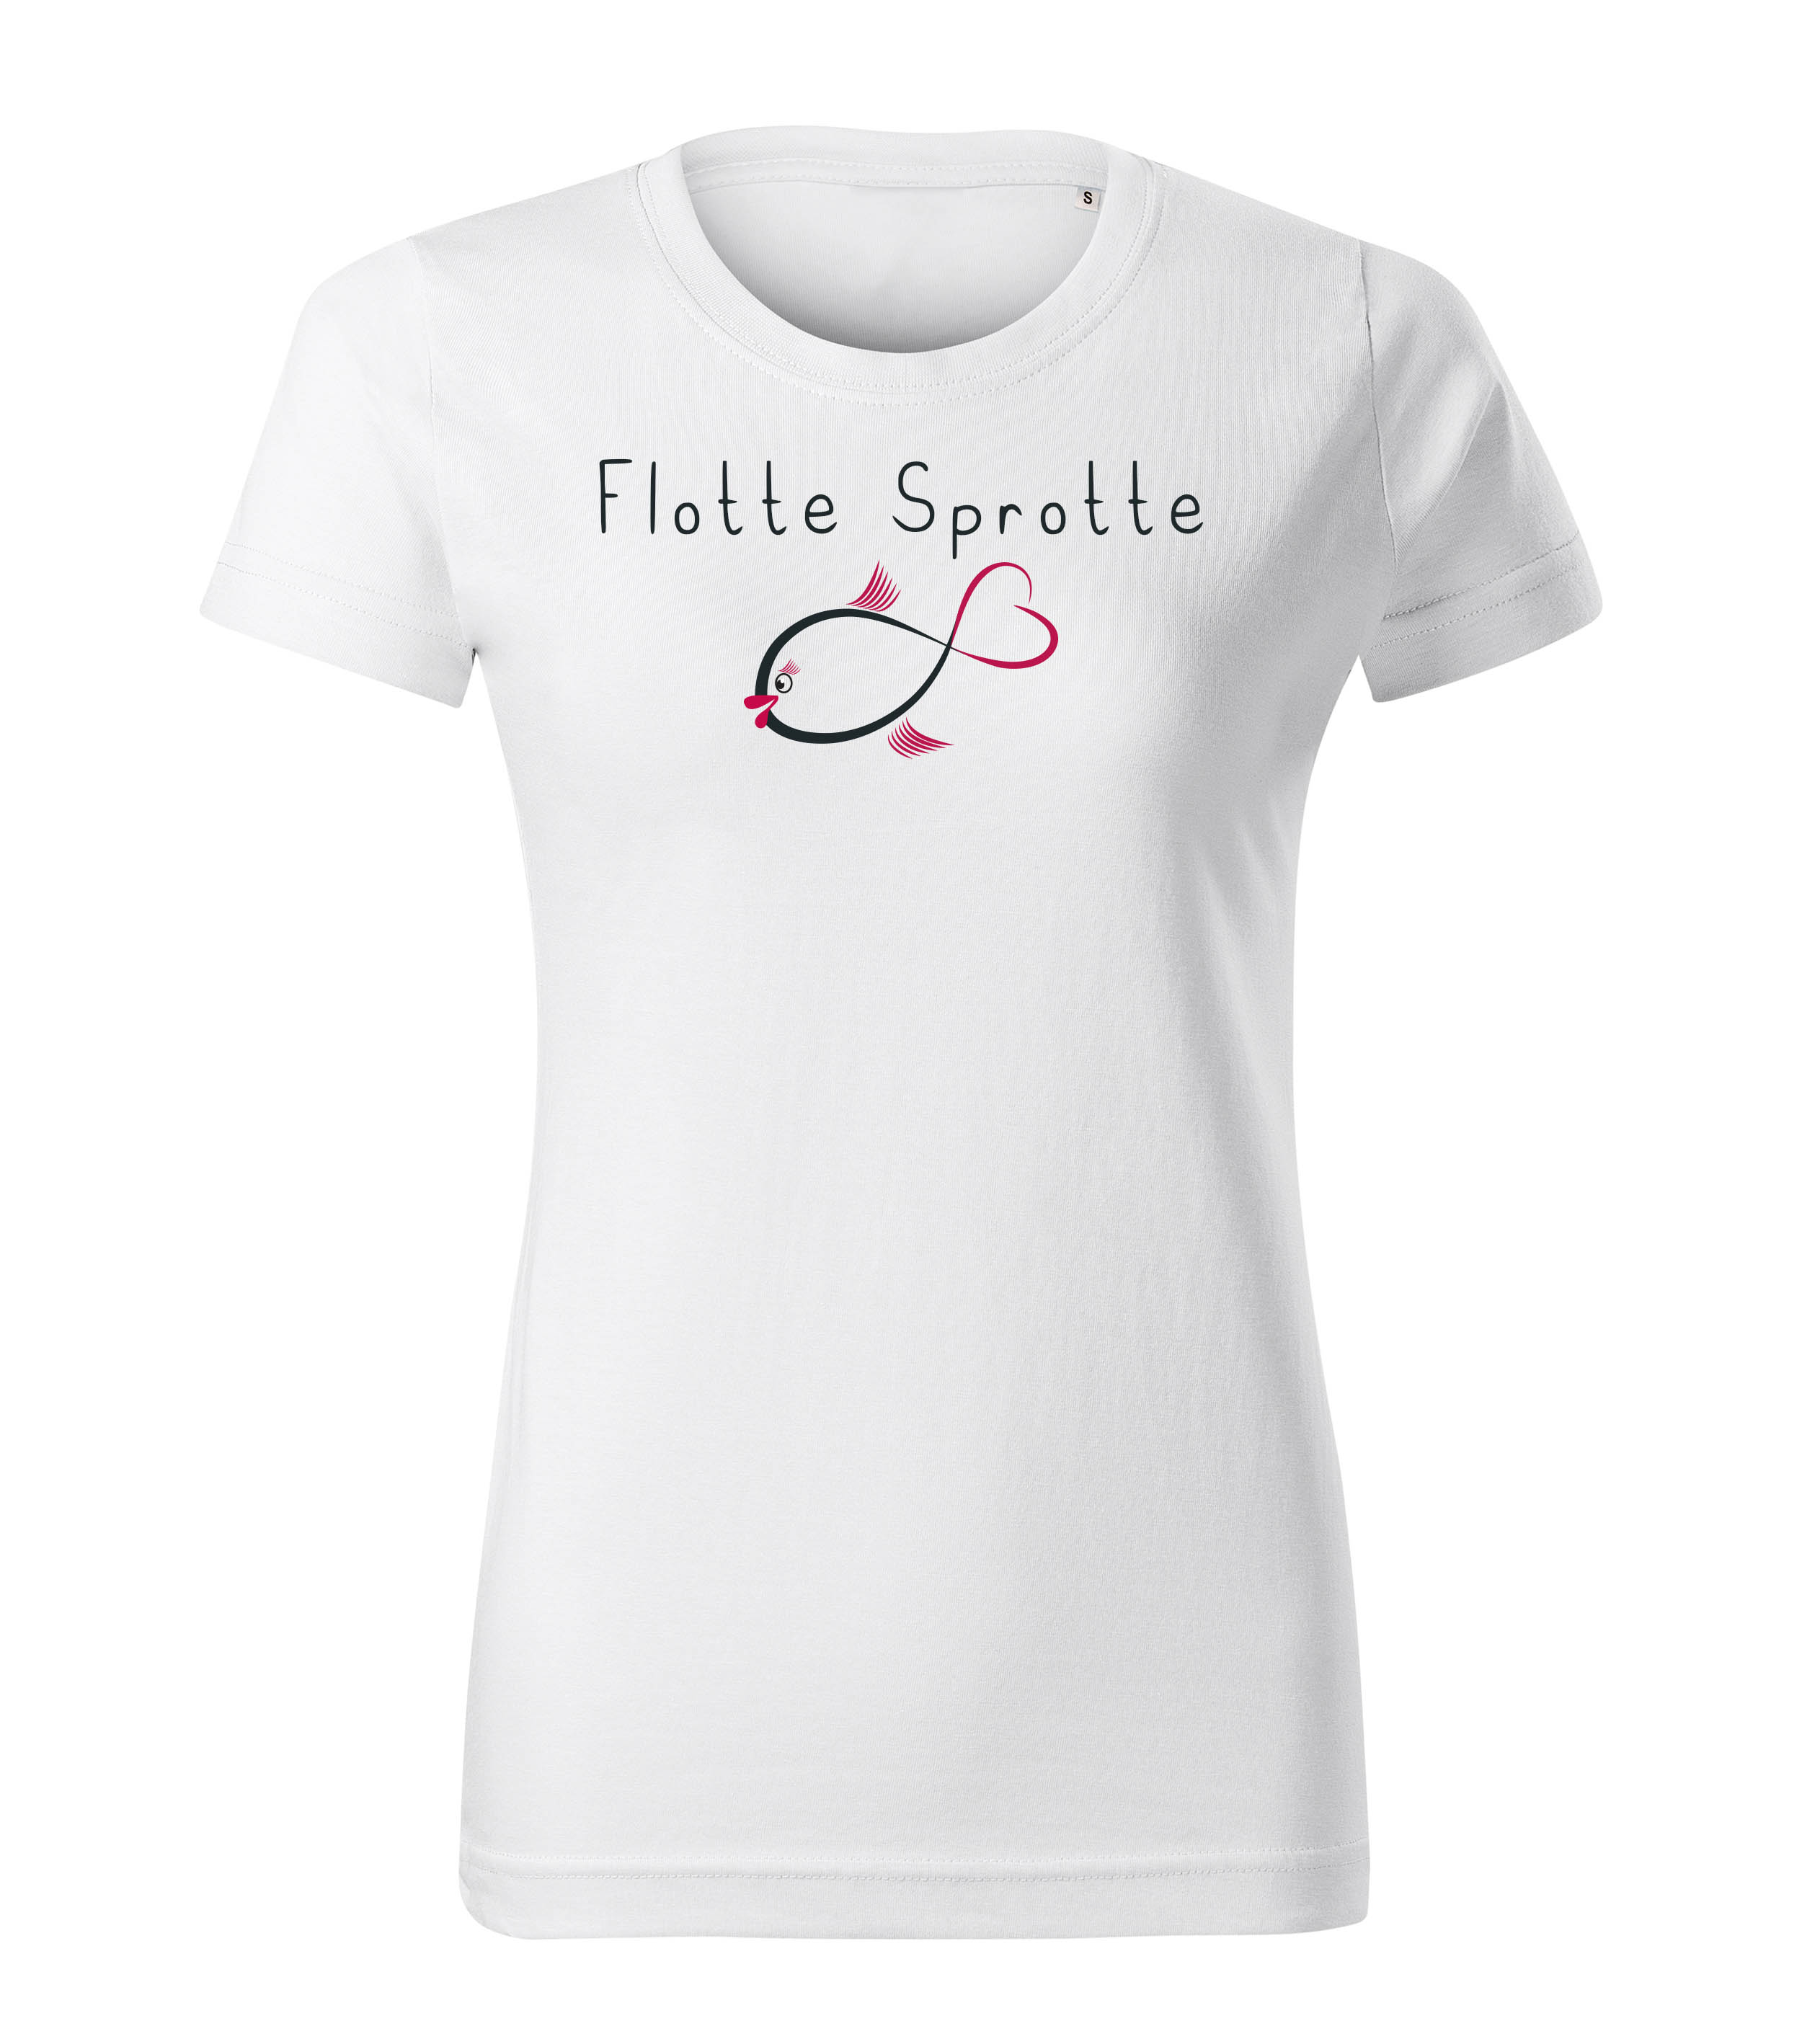 T-Shirt Shirt Spruch Flotte Sprotte Weiss / Hellgrau XS S M L XL Damen bedruckt Schrift Print Motiv Fisch